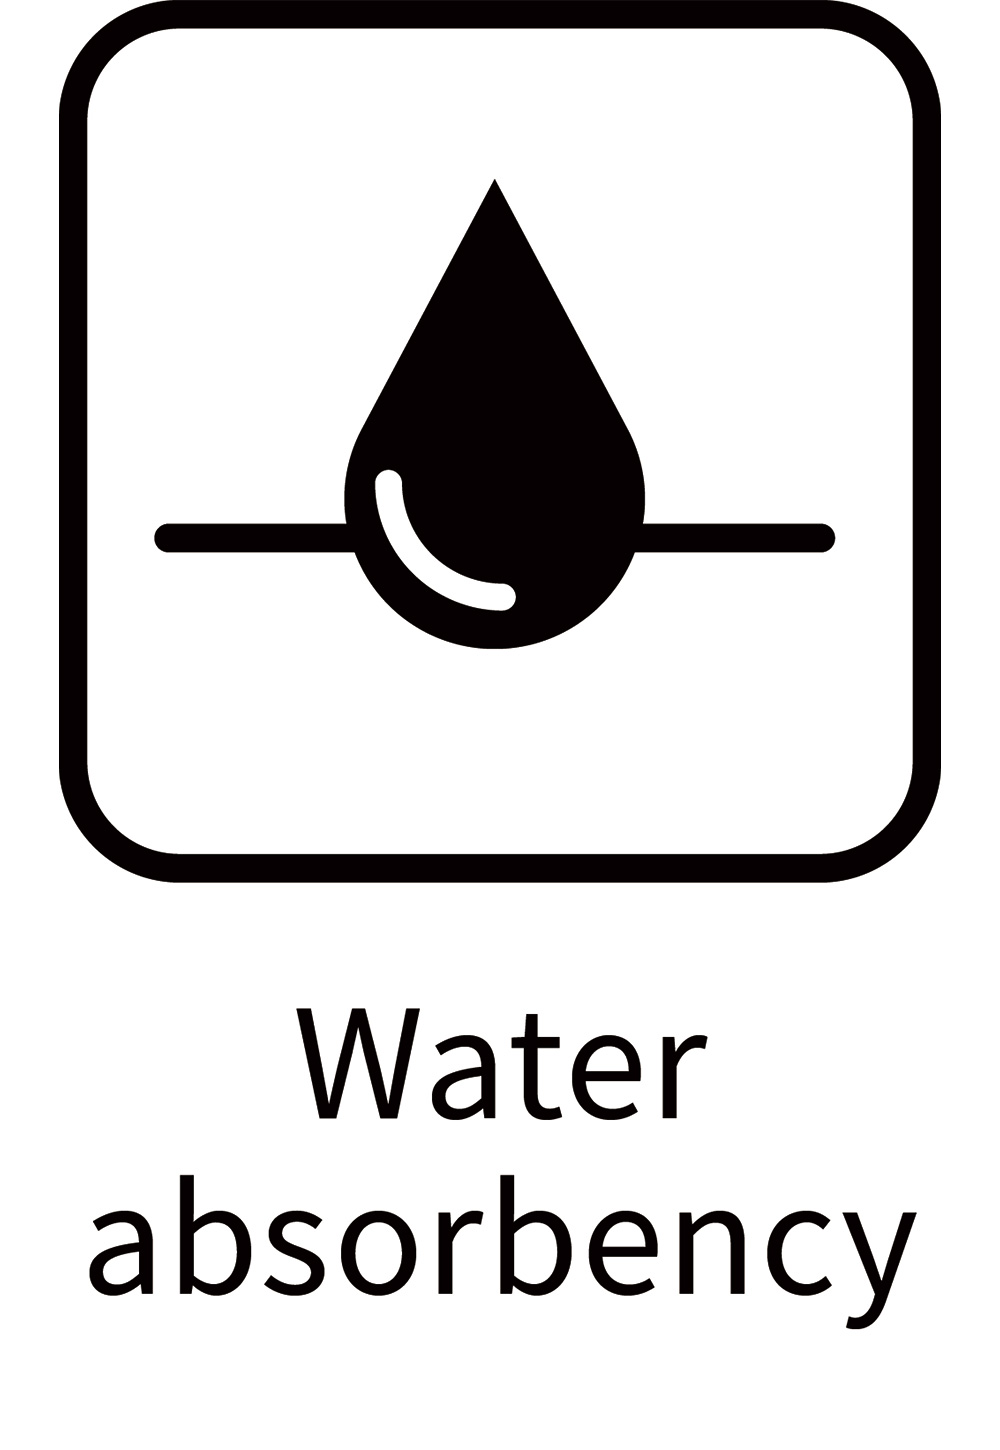 Water absorbency